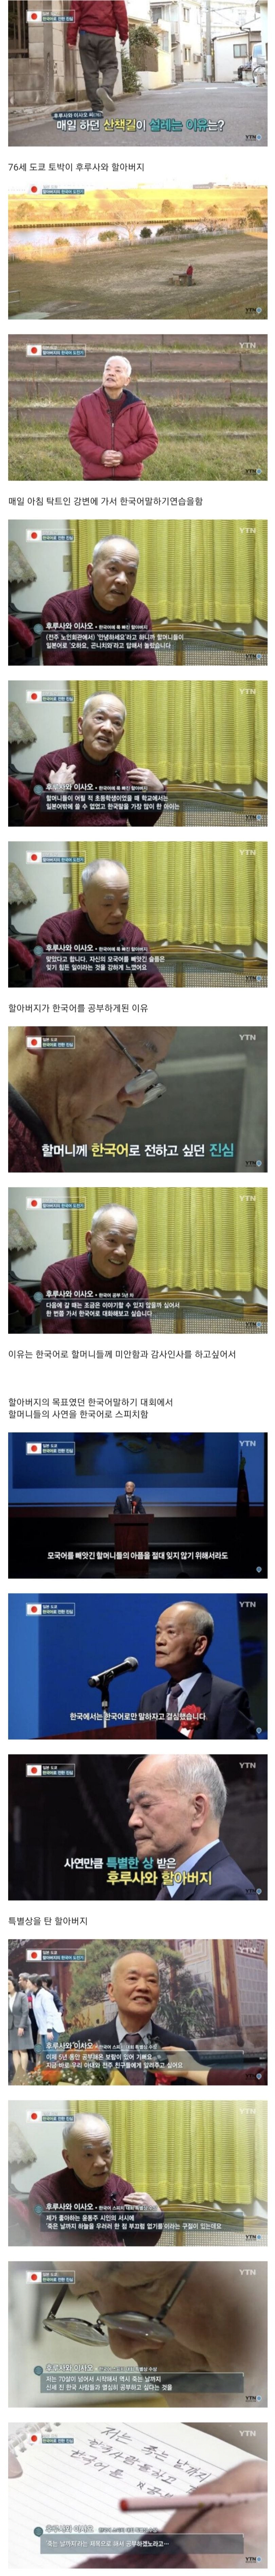 일본 할아버지가 5년째 한국어를 배우는이유